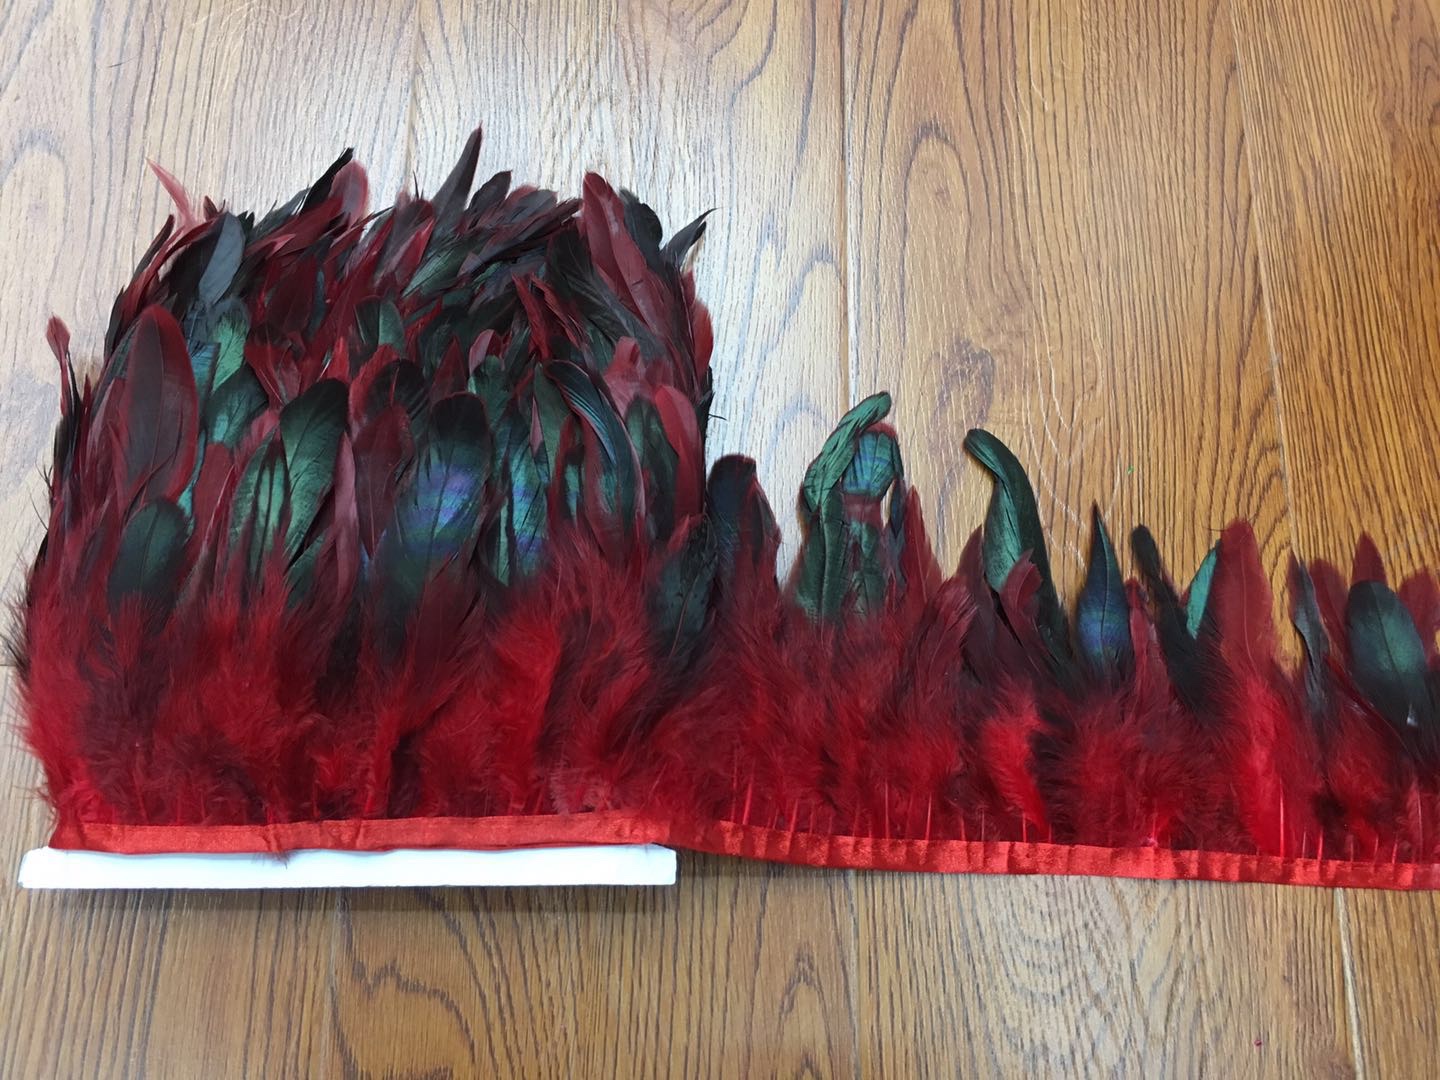 咏毛花边彩色款，羽毛长度10一15cm，4.5元一米，10米一包，有1400支羽毛，有14个颜色现货，任你选择。白底实物图